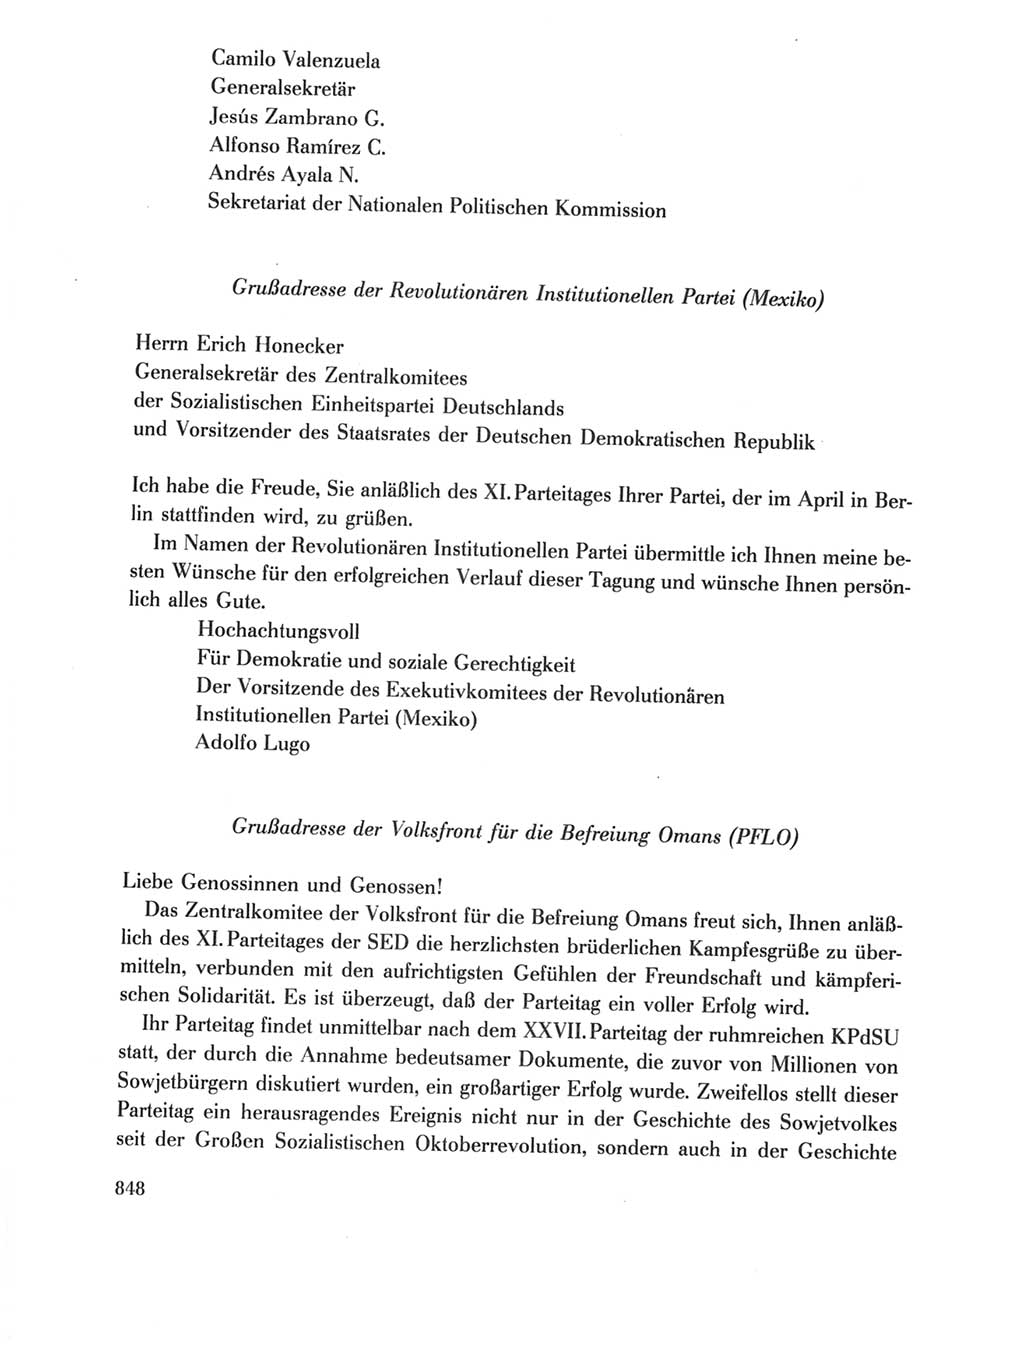 Protokoll der Verhandlungen des Ⅺ. Parteitages der Sozialistischen Einheitspartei Deutschlands (SED) [Deutsche Demokratische Republik (DDR)] 1986, Seite 848